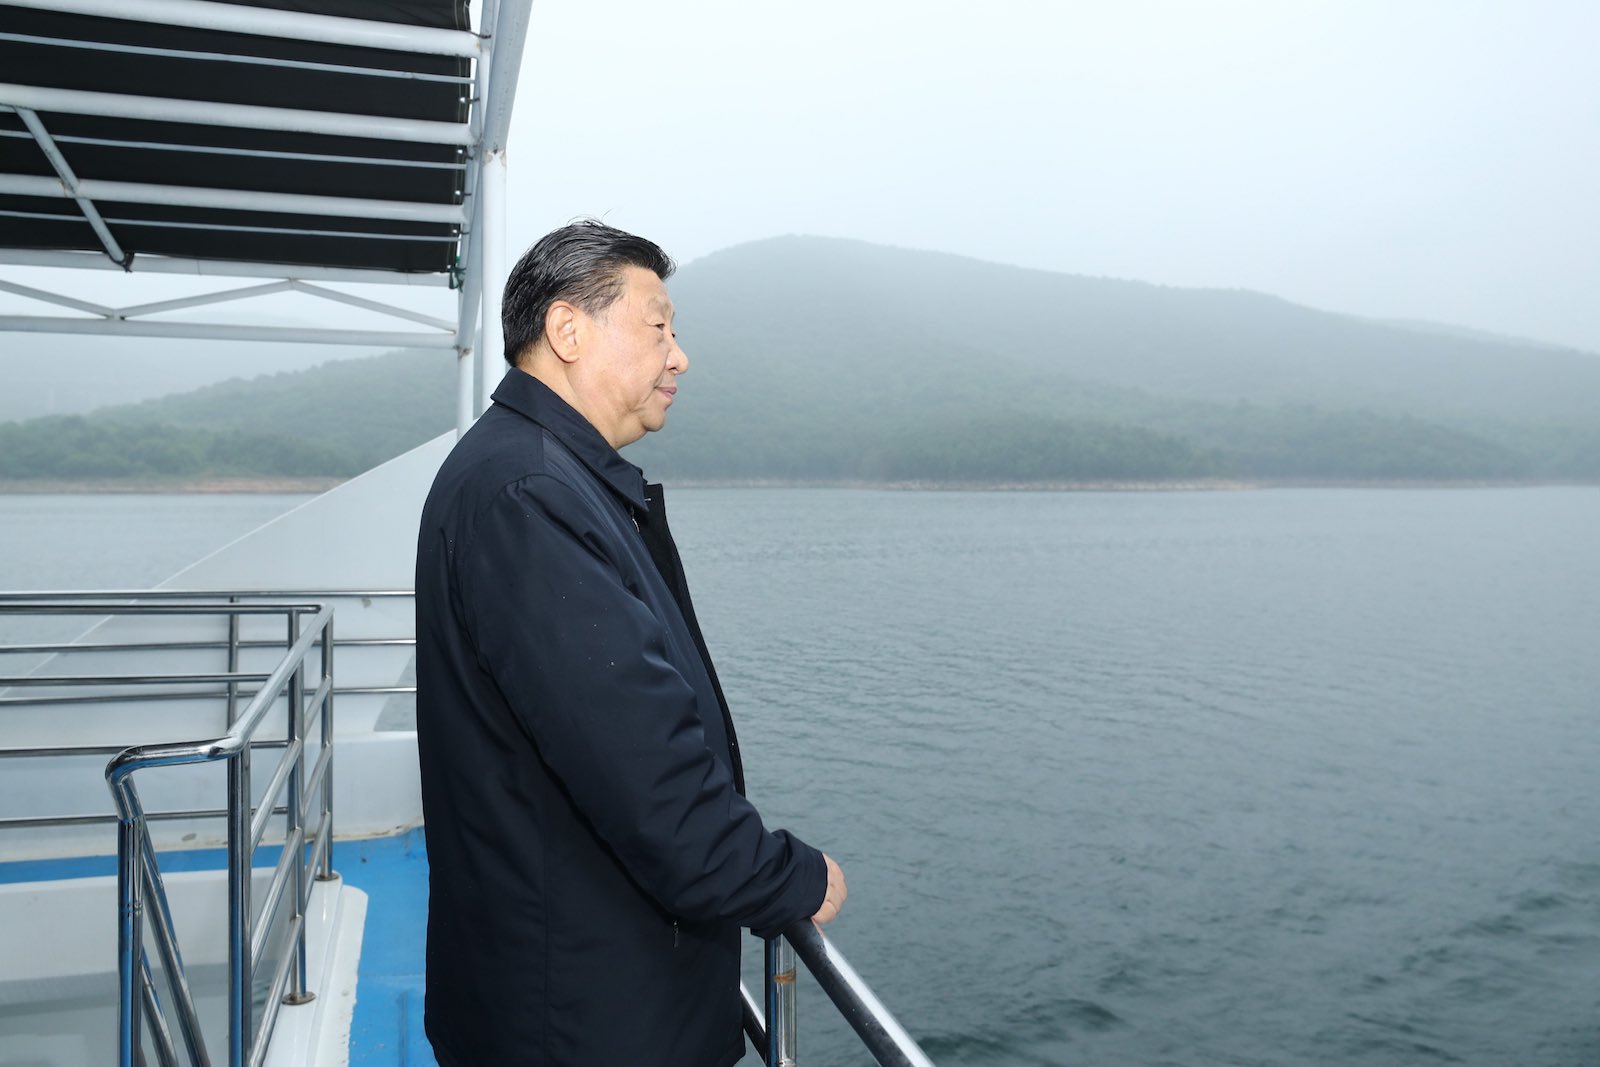 Chinese President Xi Jinping inspects the Danjiangkou Reservoir in Xichuan County, Nanyang, central China's Henan Province, 13 May 2021 (Ju Peng/Xinhua via Getty Images)